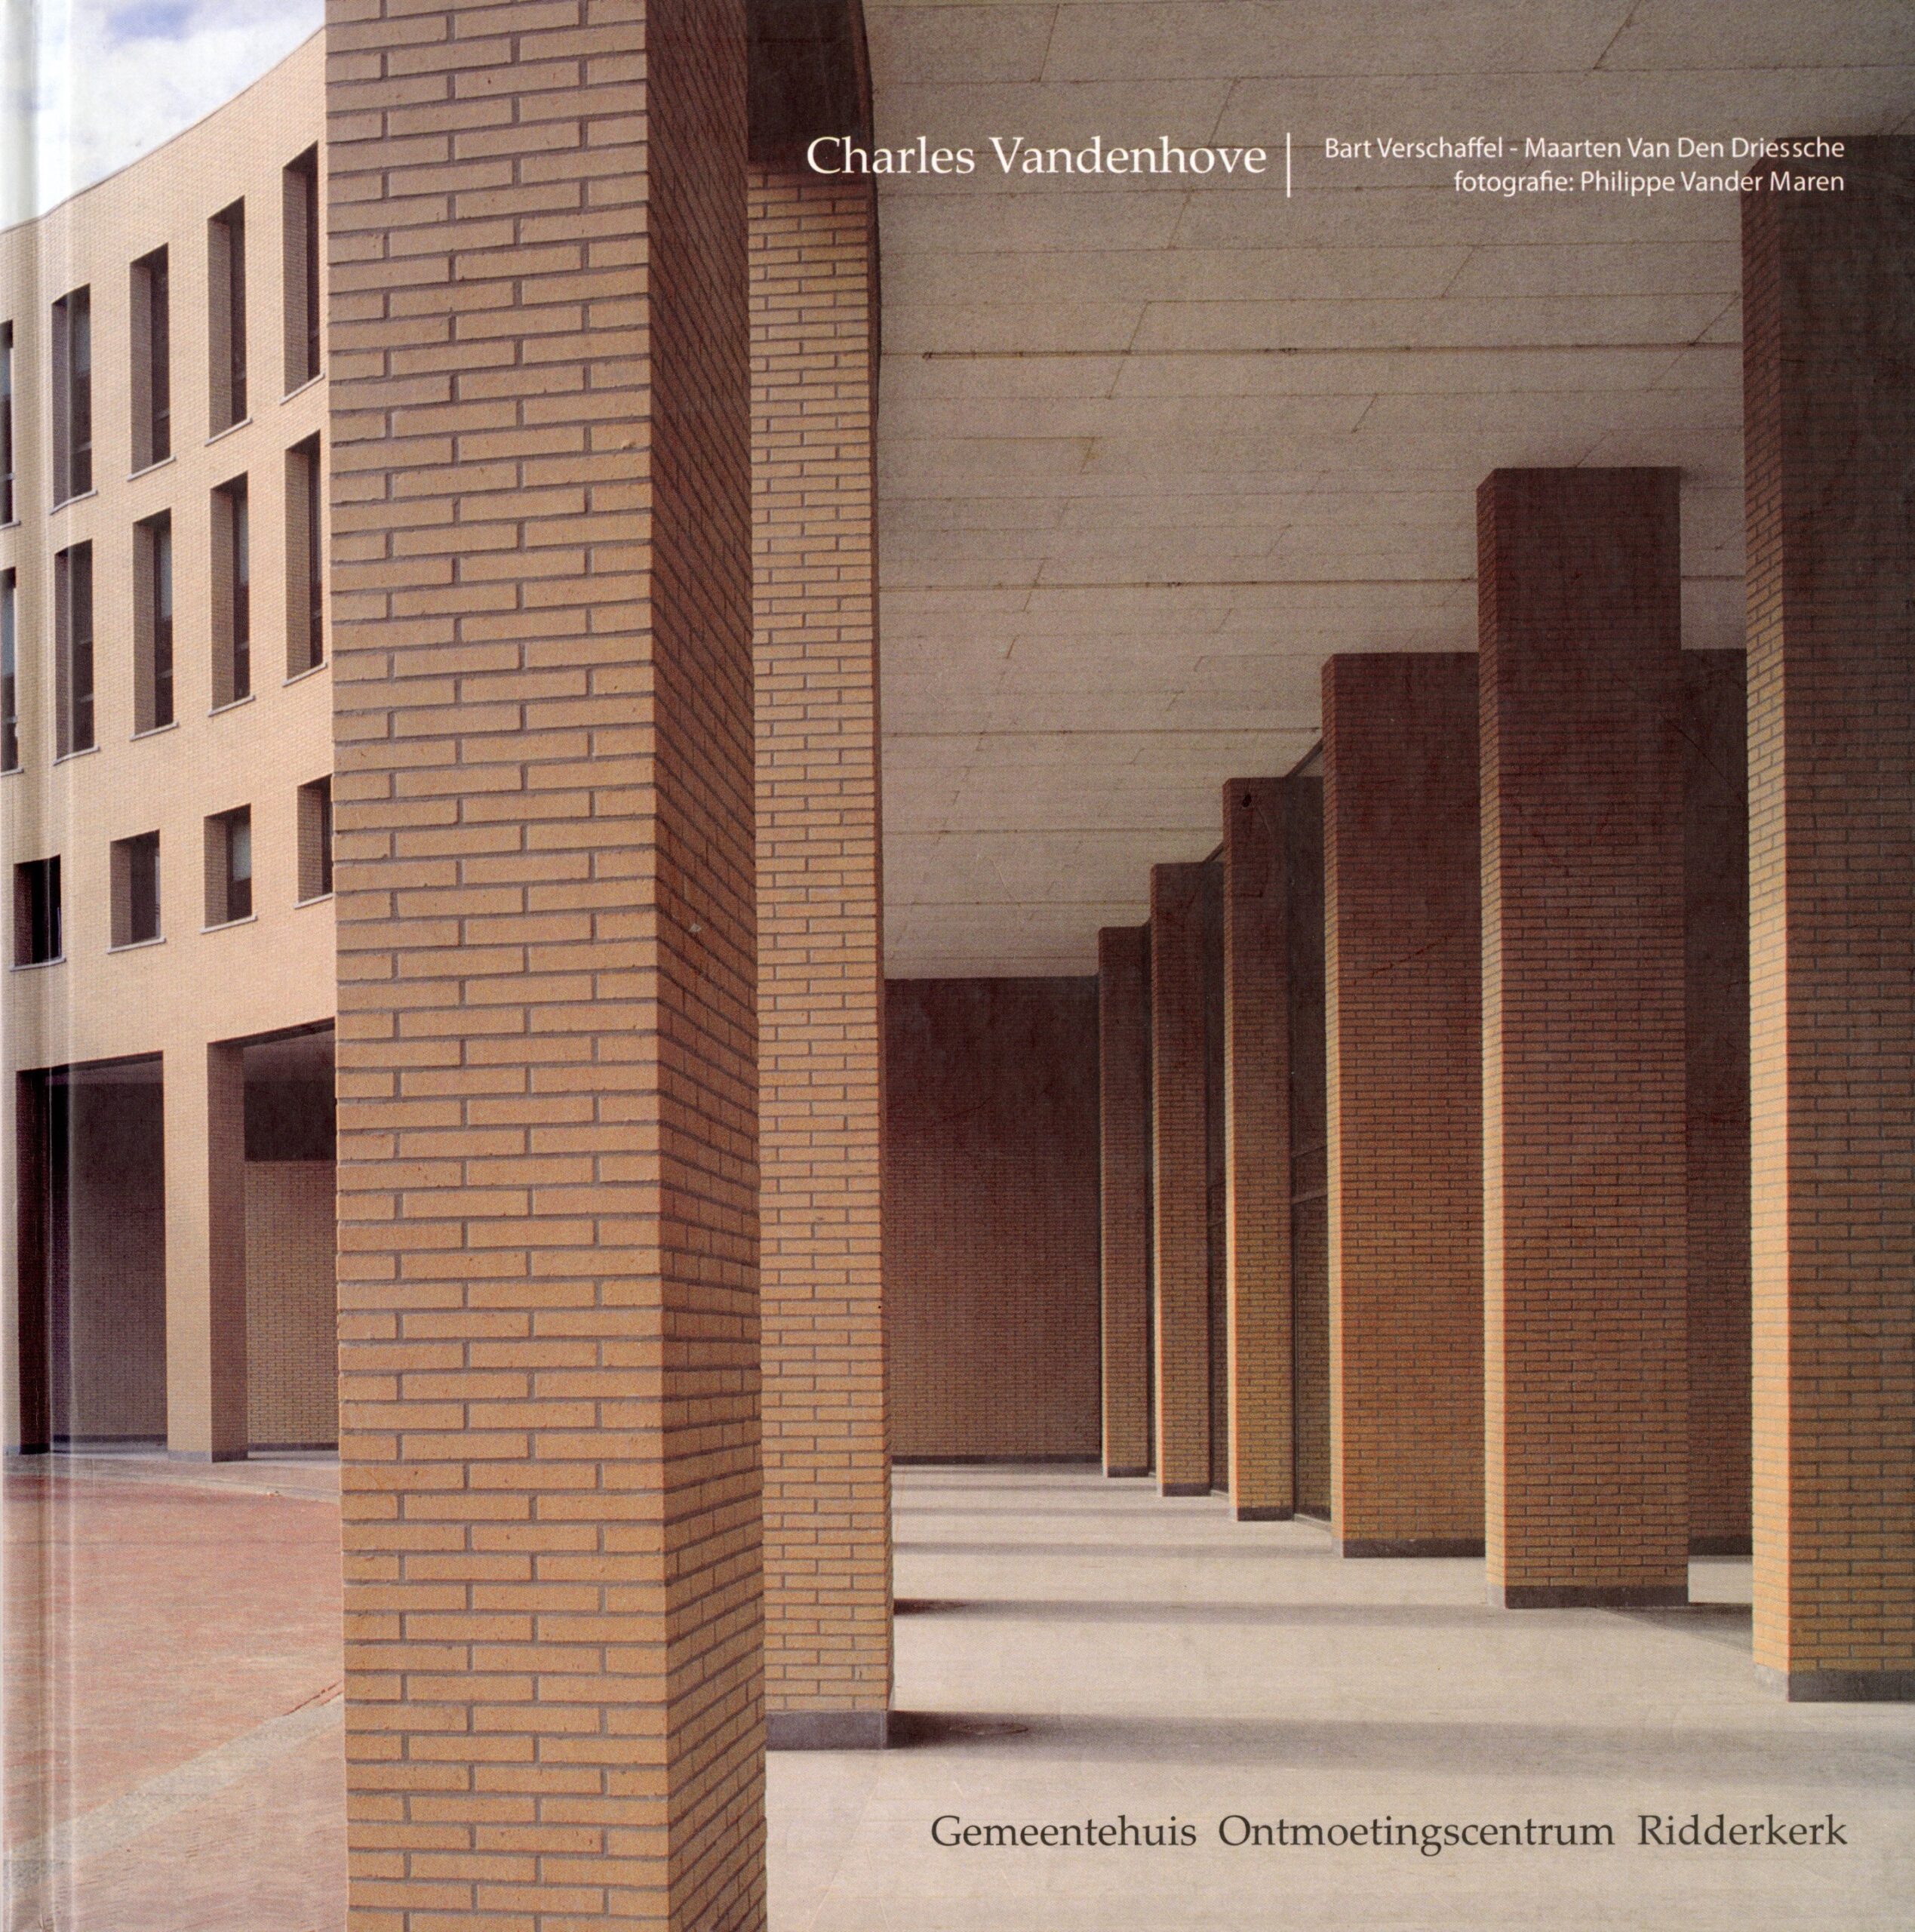 Charles Vandenhove – Gemeentehuis Ontmoetingscentrum Ridderkerk